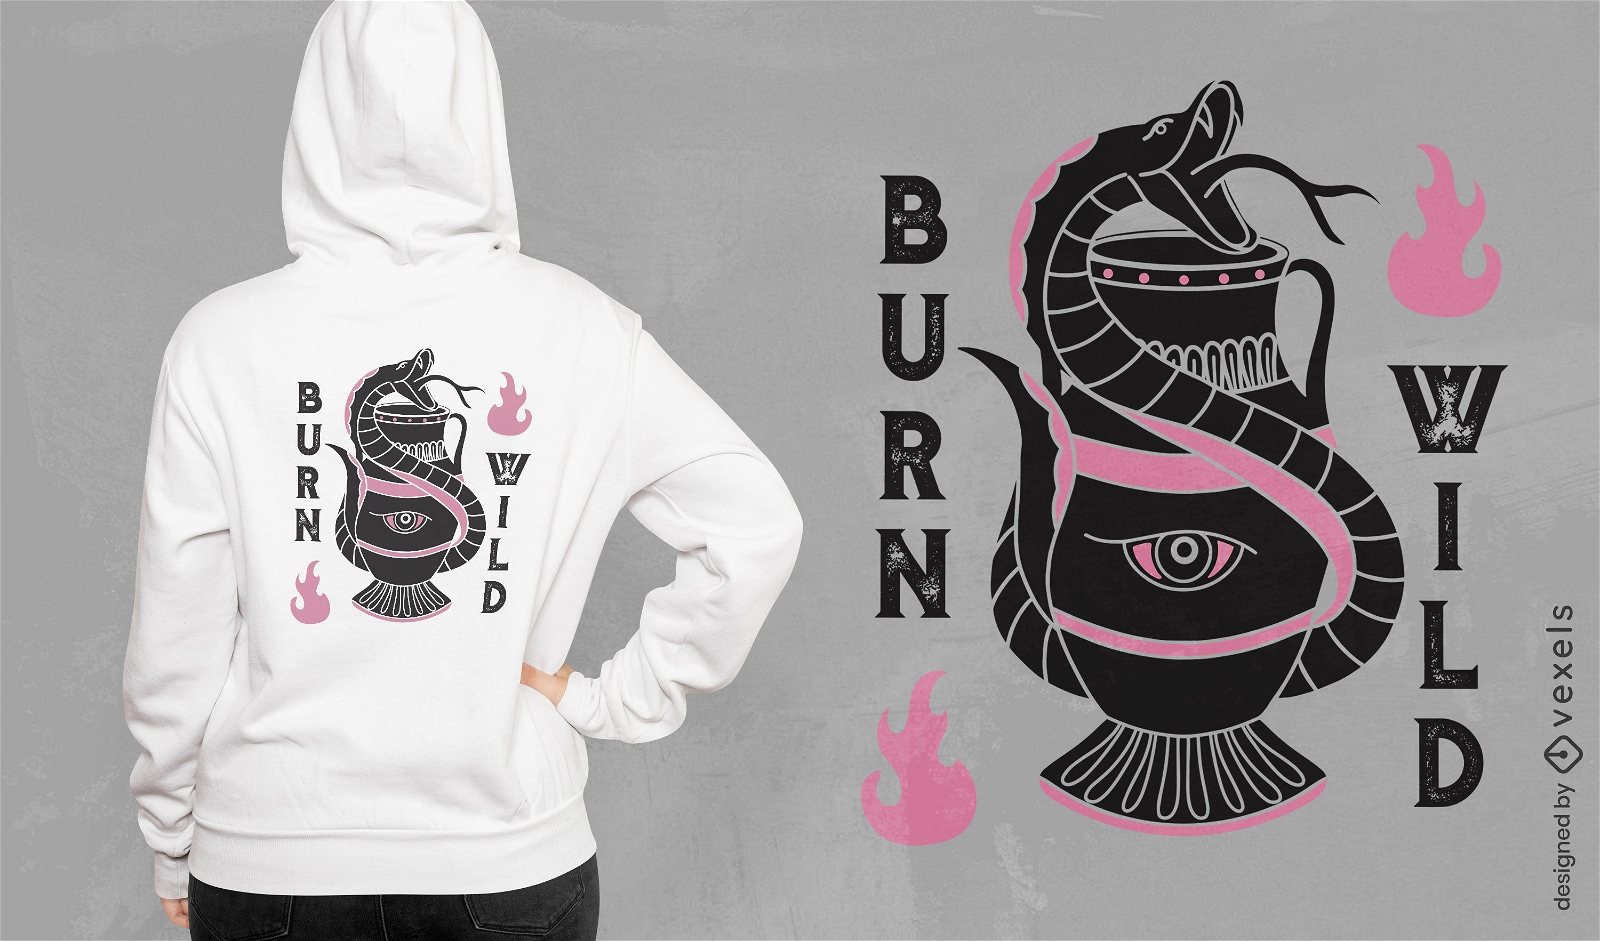 Burn wild snake t-shirt design